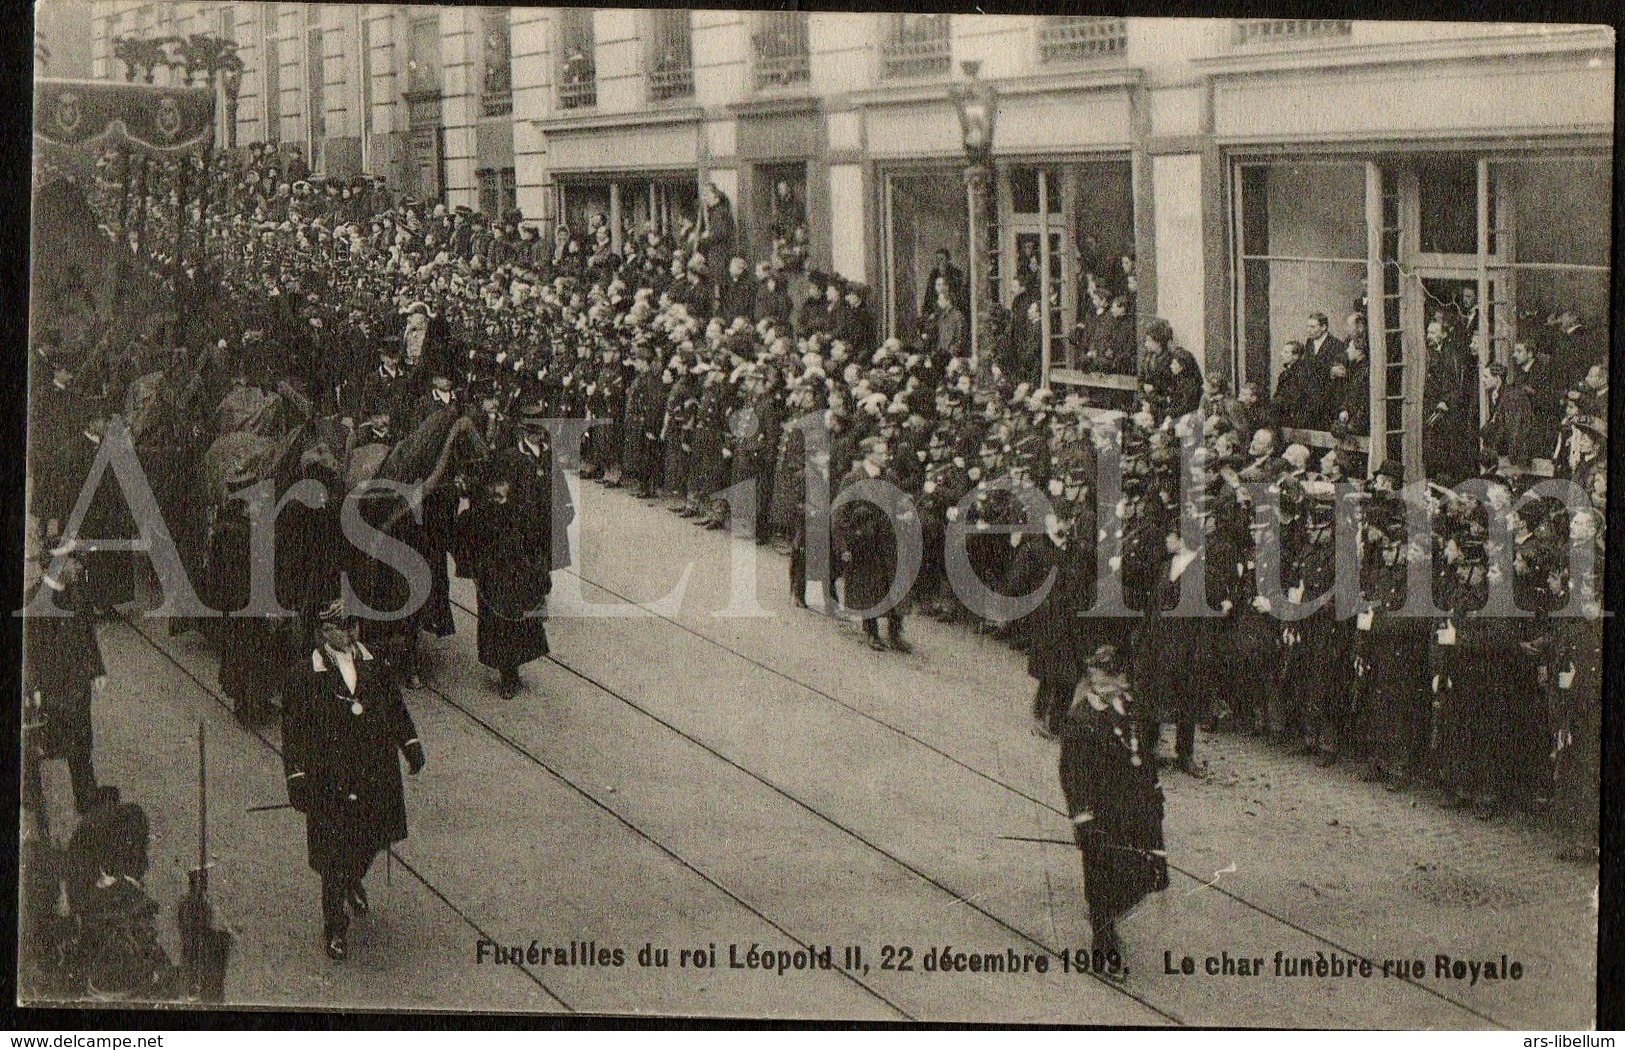 10 postcards / ROYALTY / Belgique / België / Koning Leopold II / Roi Leopold II / King Leopold II / funérailles / 1909